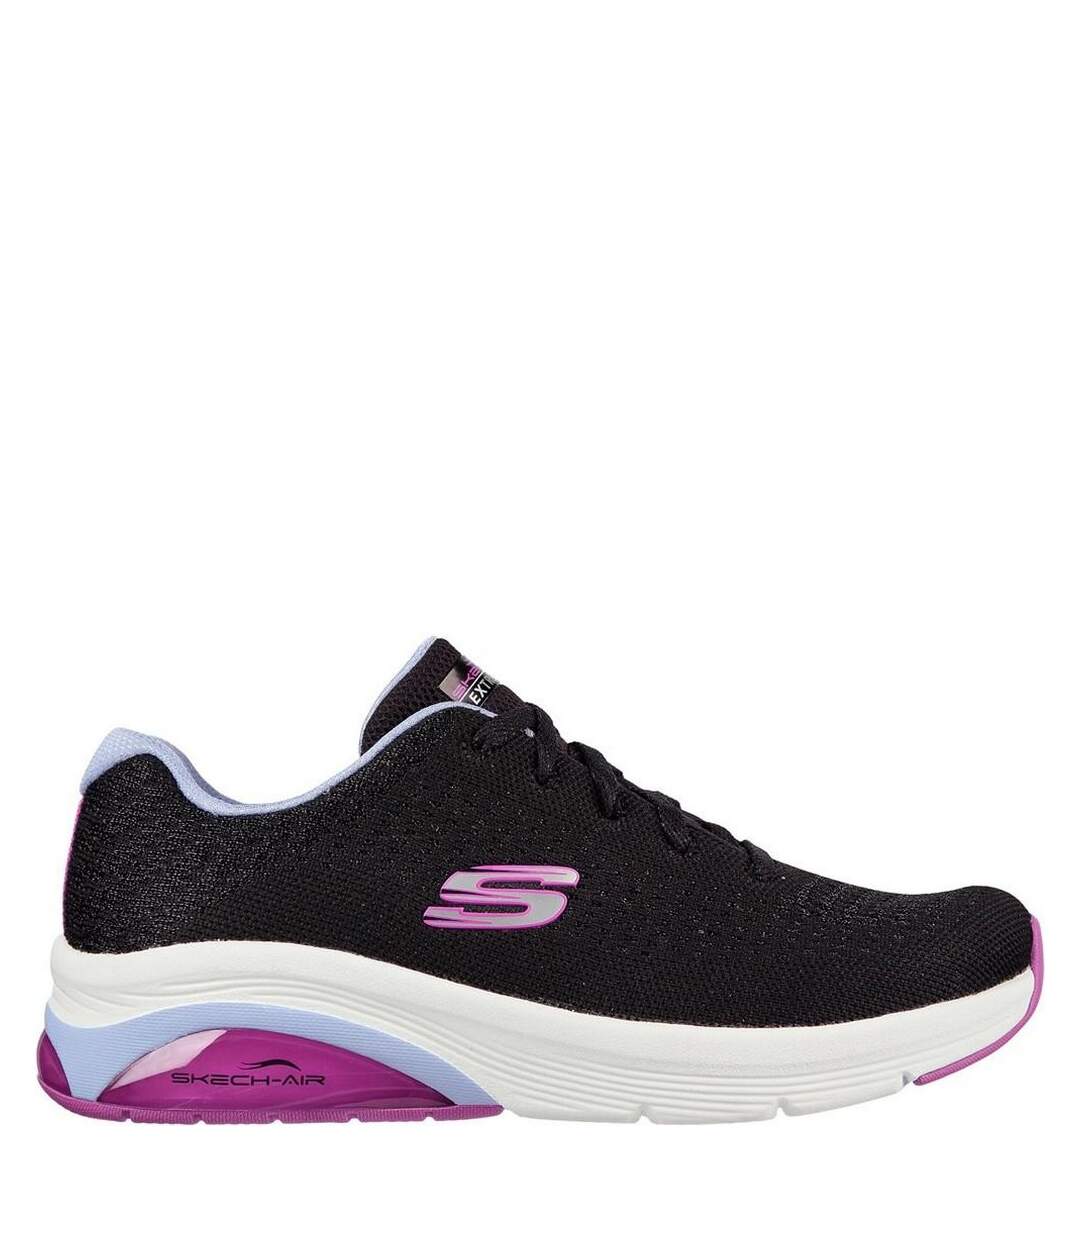 Skechers Womens/Ladies Skech-Air Extreme 2.0 Classic Vibe Sneakers (Black/Lavender) - UTFS8583